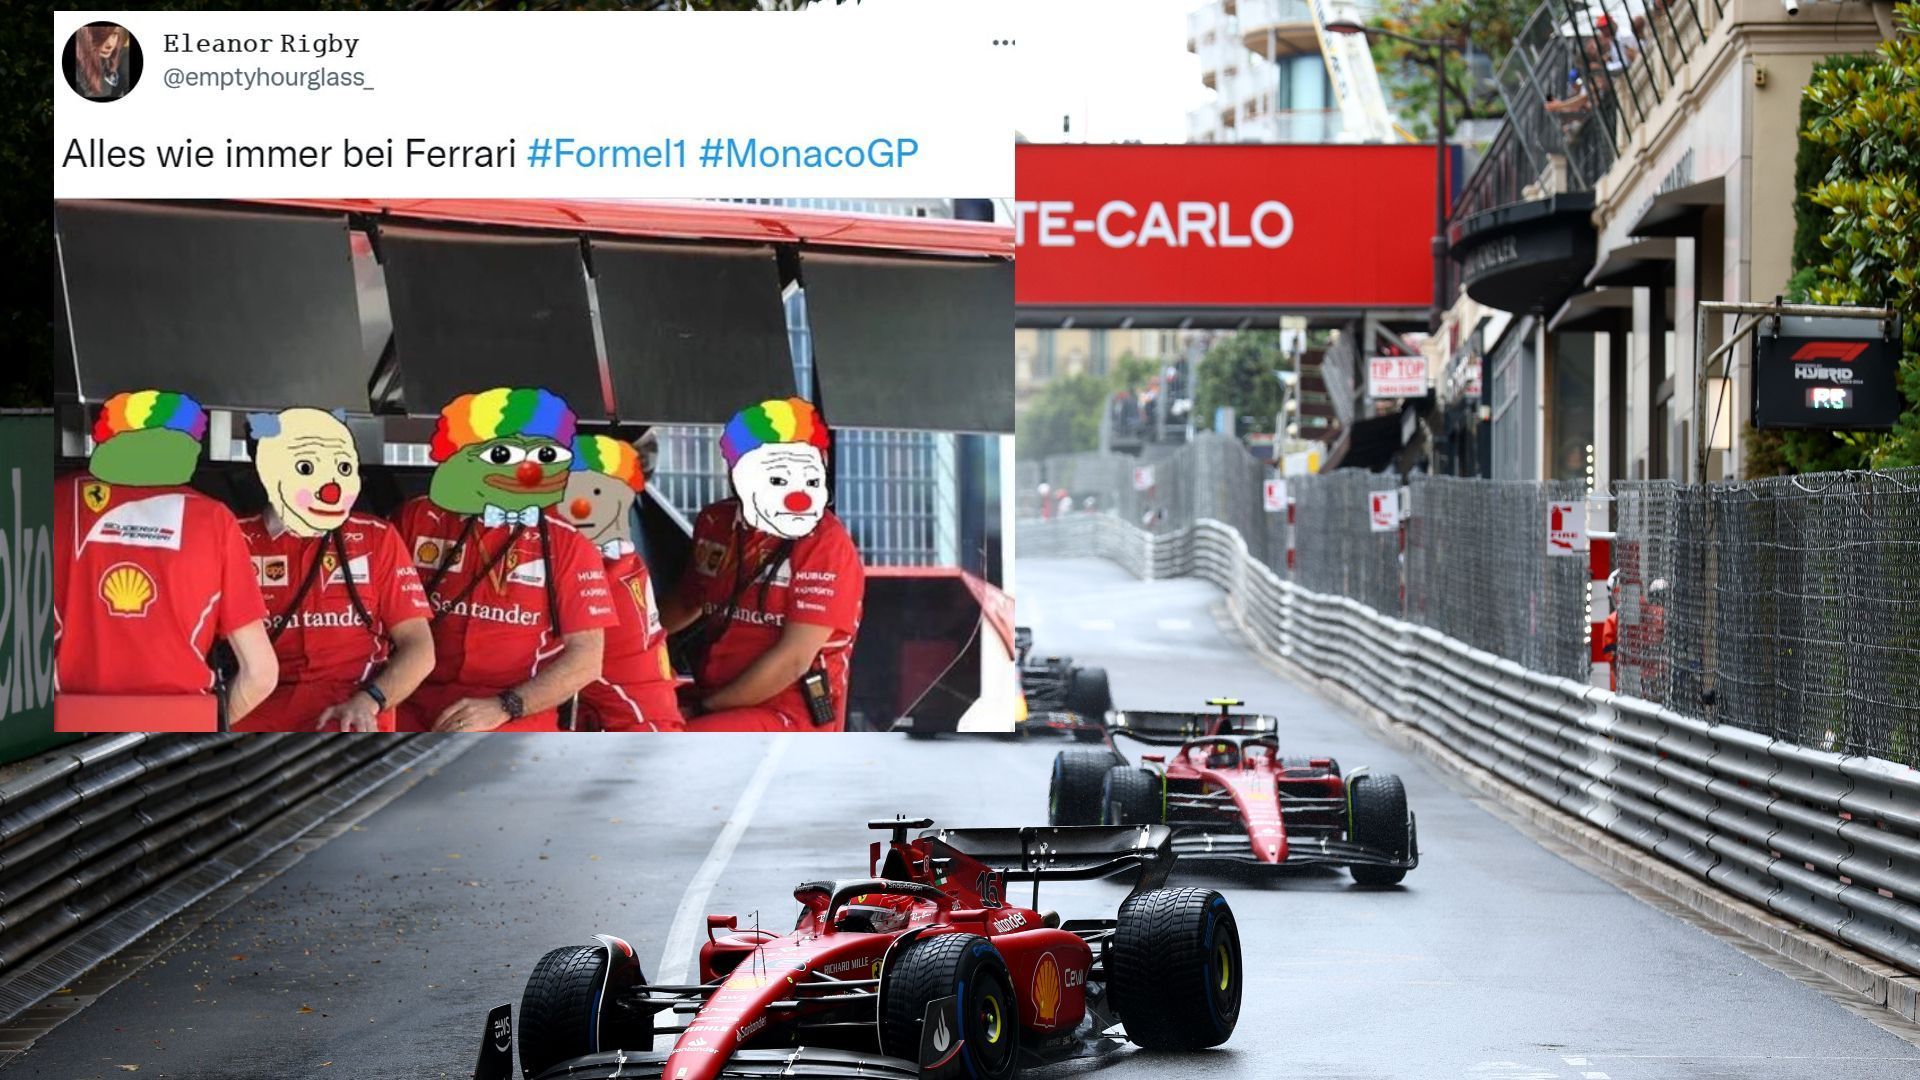 
                <strong>So reagiert das Netz auf den Monaco-GP</strong><br>
                Userin "emptyhourglass" macht sich über den Kommandostand von Ferrari lustig.
              